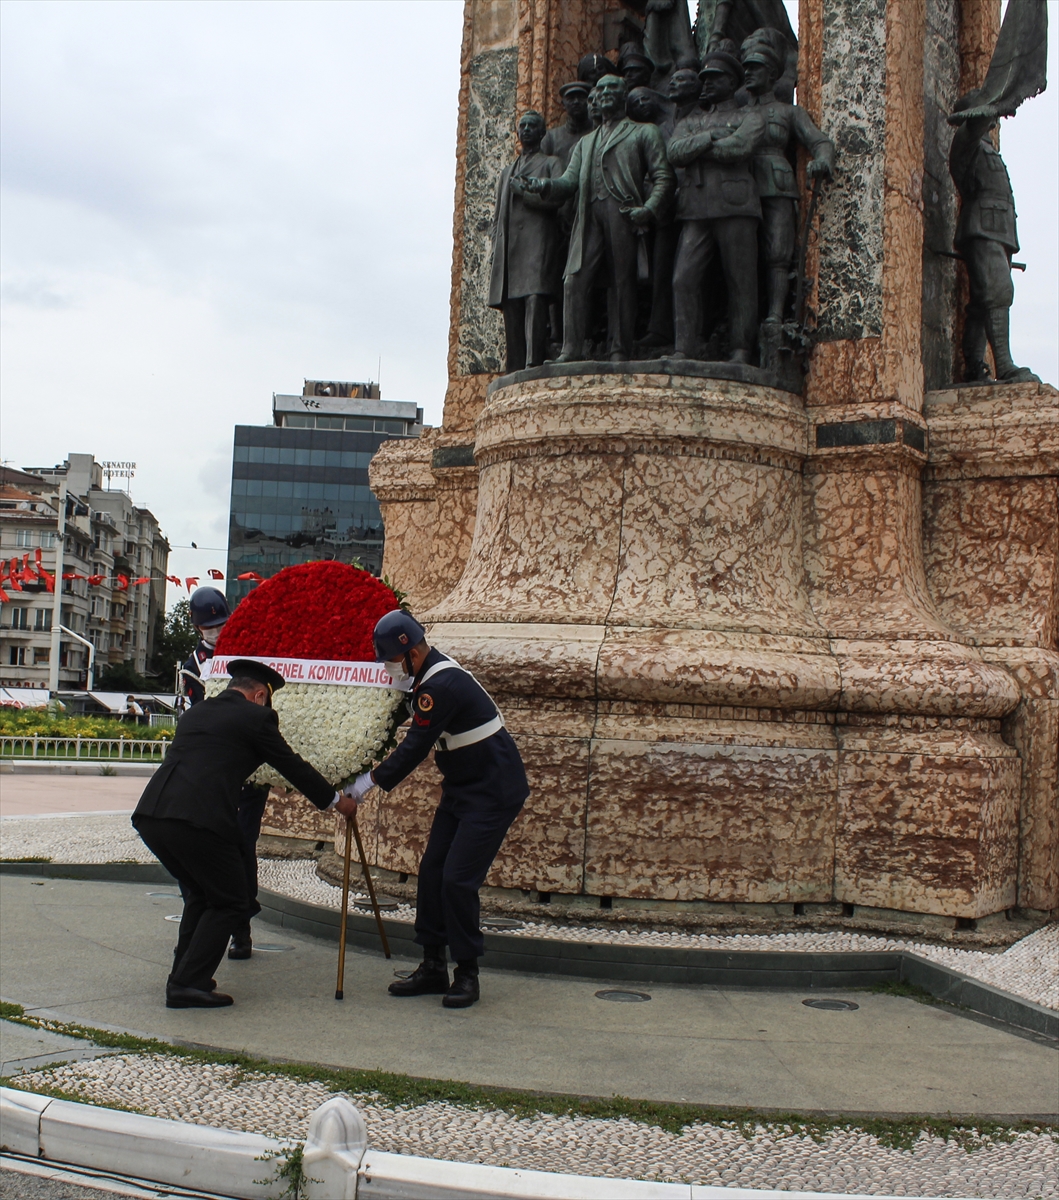 İstanbul'da Jandarma Teşkilatının 182. kuruluş yıl dönümü kutlandı